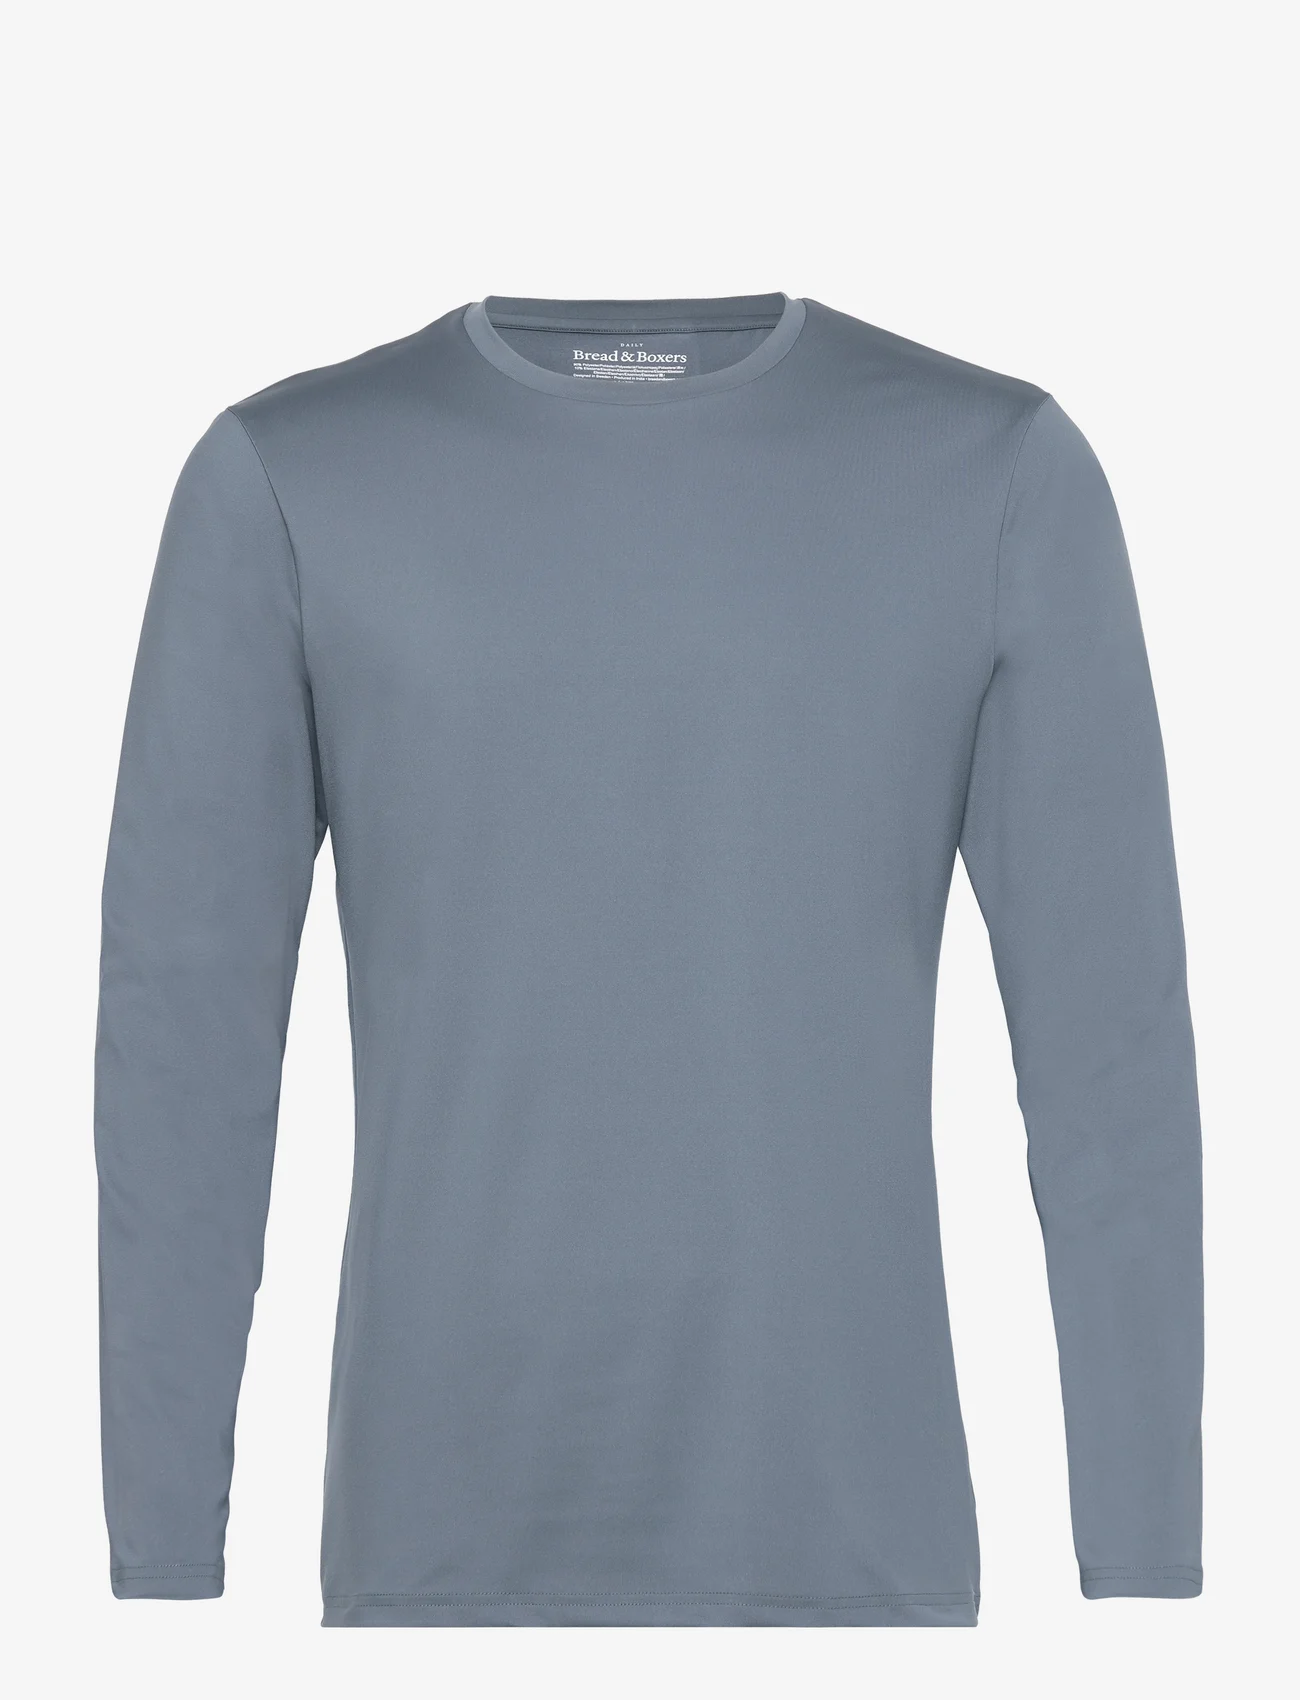 Bread & Boxers - Long Sleeve Active - laisvalaikio marškinėliai - orion blue - 0